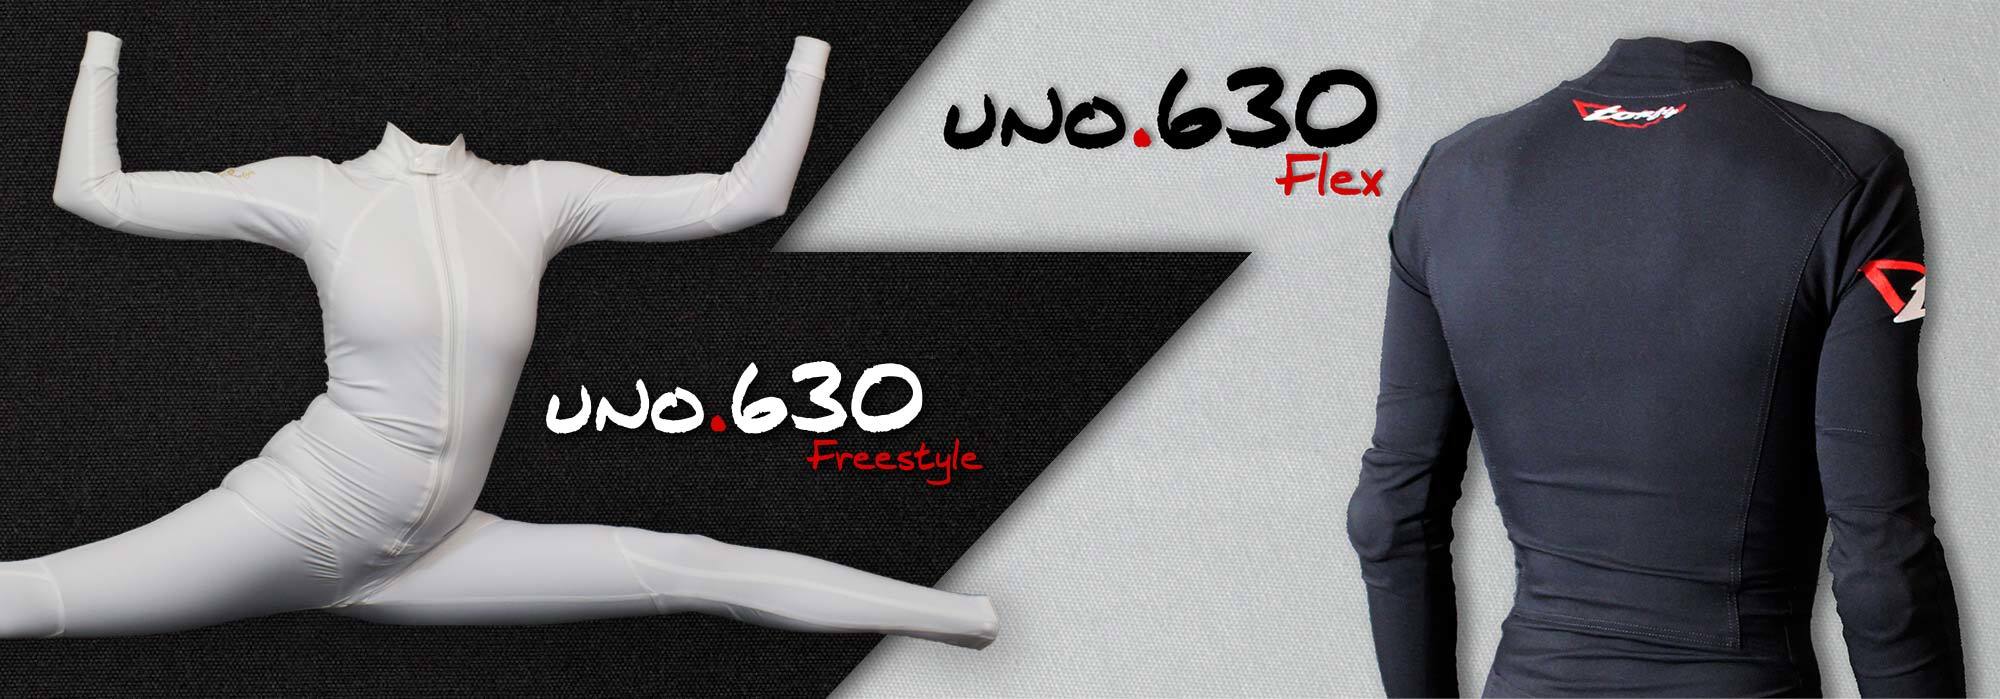 UNO.630 Flex & Freestyle